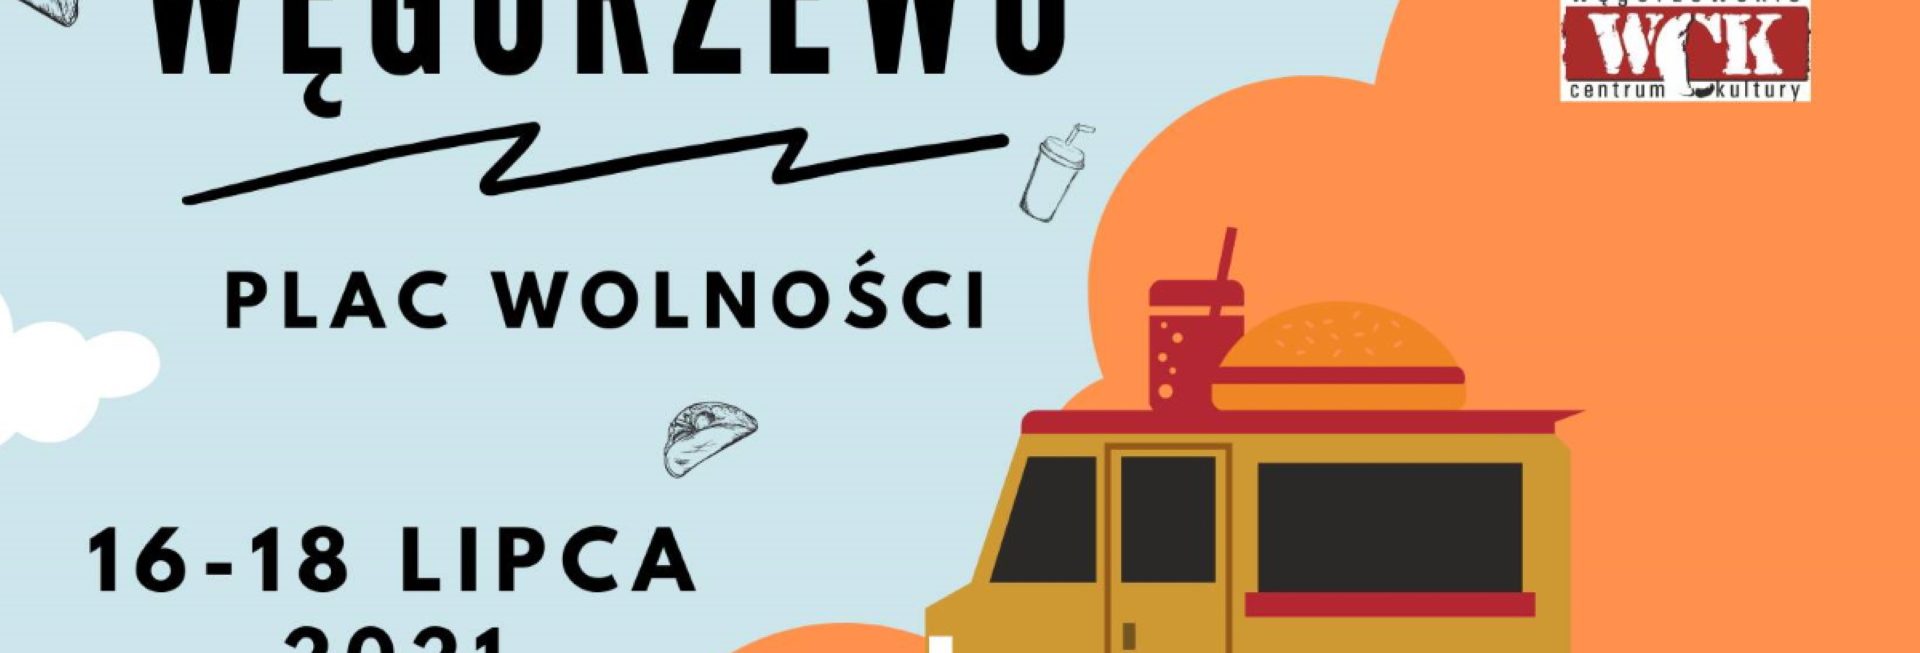 Plakat graficzny zapraszający do Węgorzewa na Ligę FoodTrucków - Węgorzewo 2021. Na plakacie grafika foodtraca oraz napisy. 